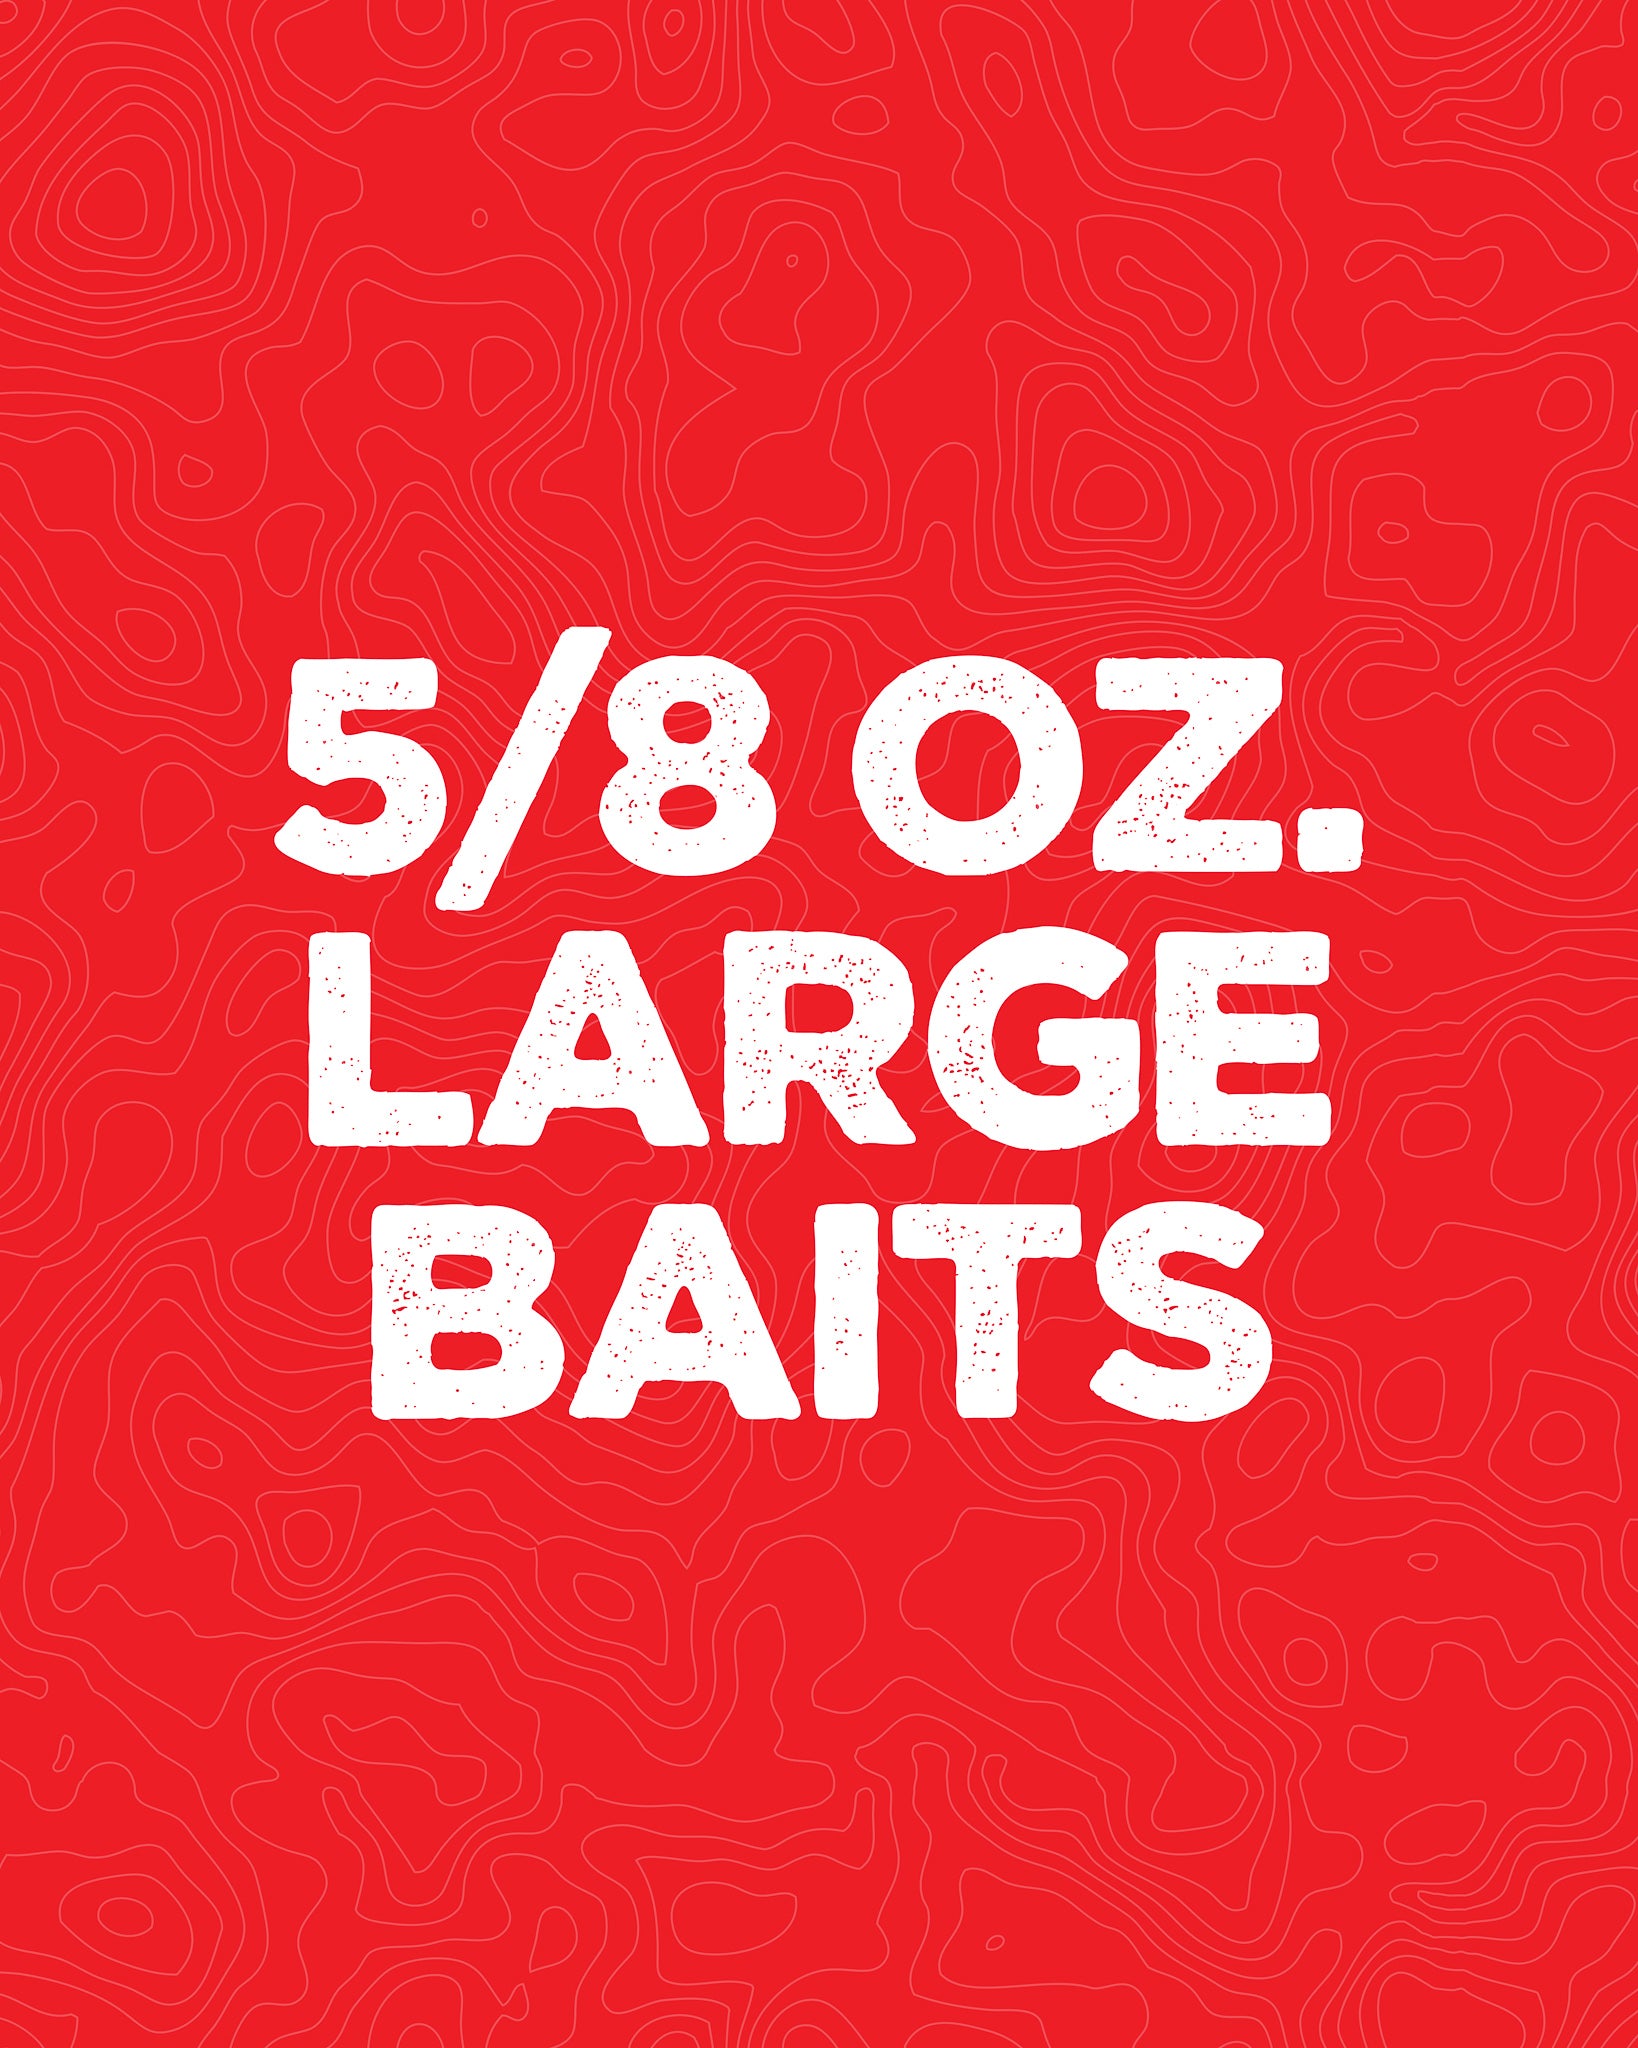 5/8 oz. Large Baits